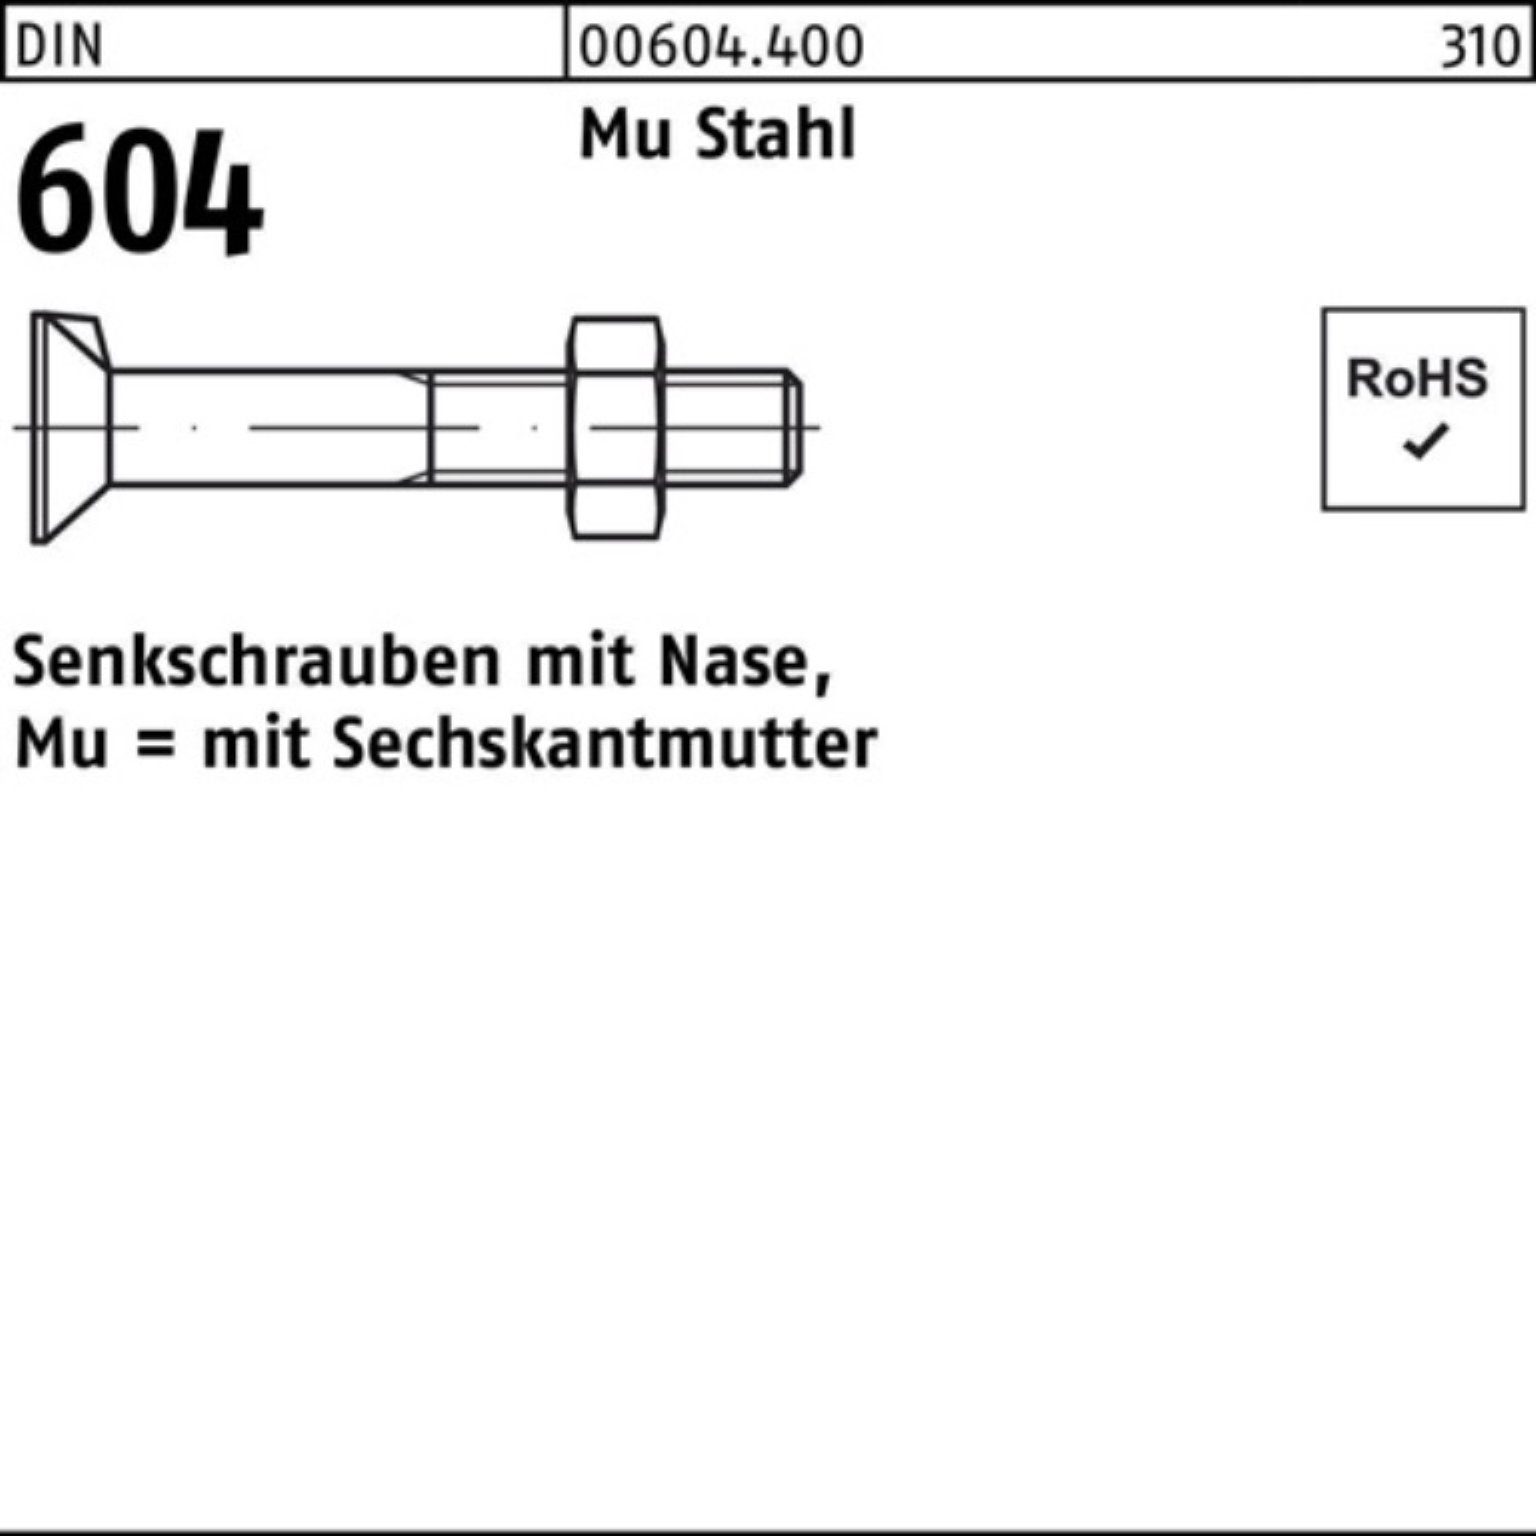 Reyher Senkschraube 100er Pack Senkschraube DIN 604 Nase/6-ktmutter M24x 70 Mu Stahl 4.6 2